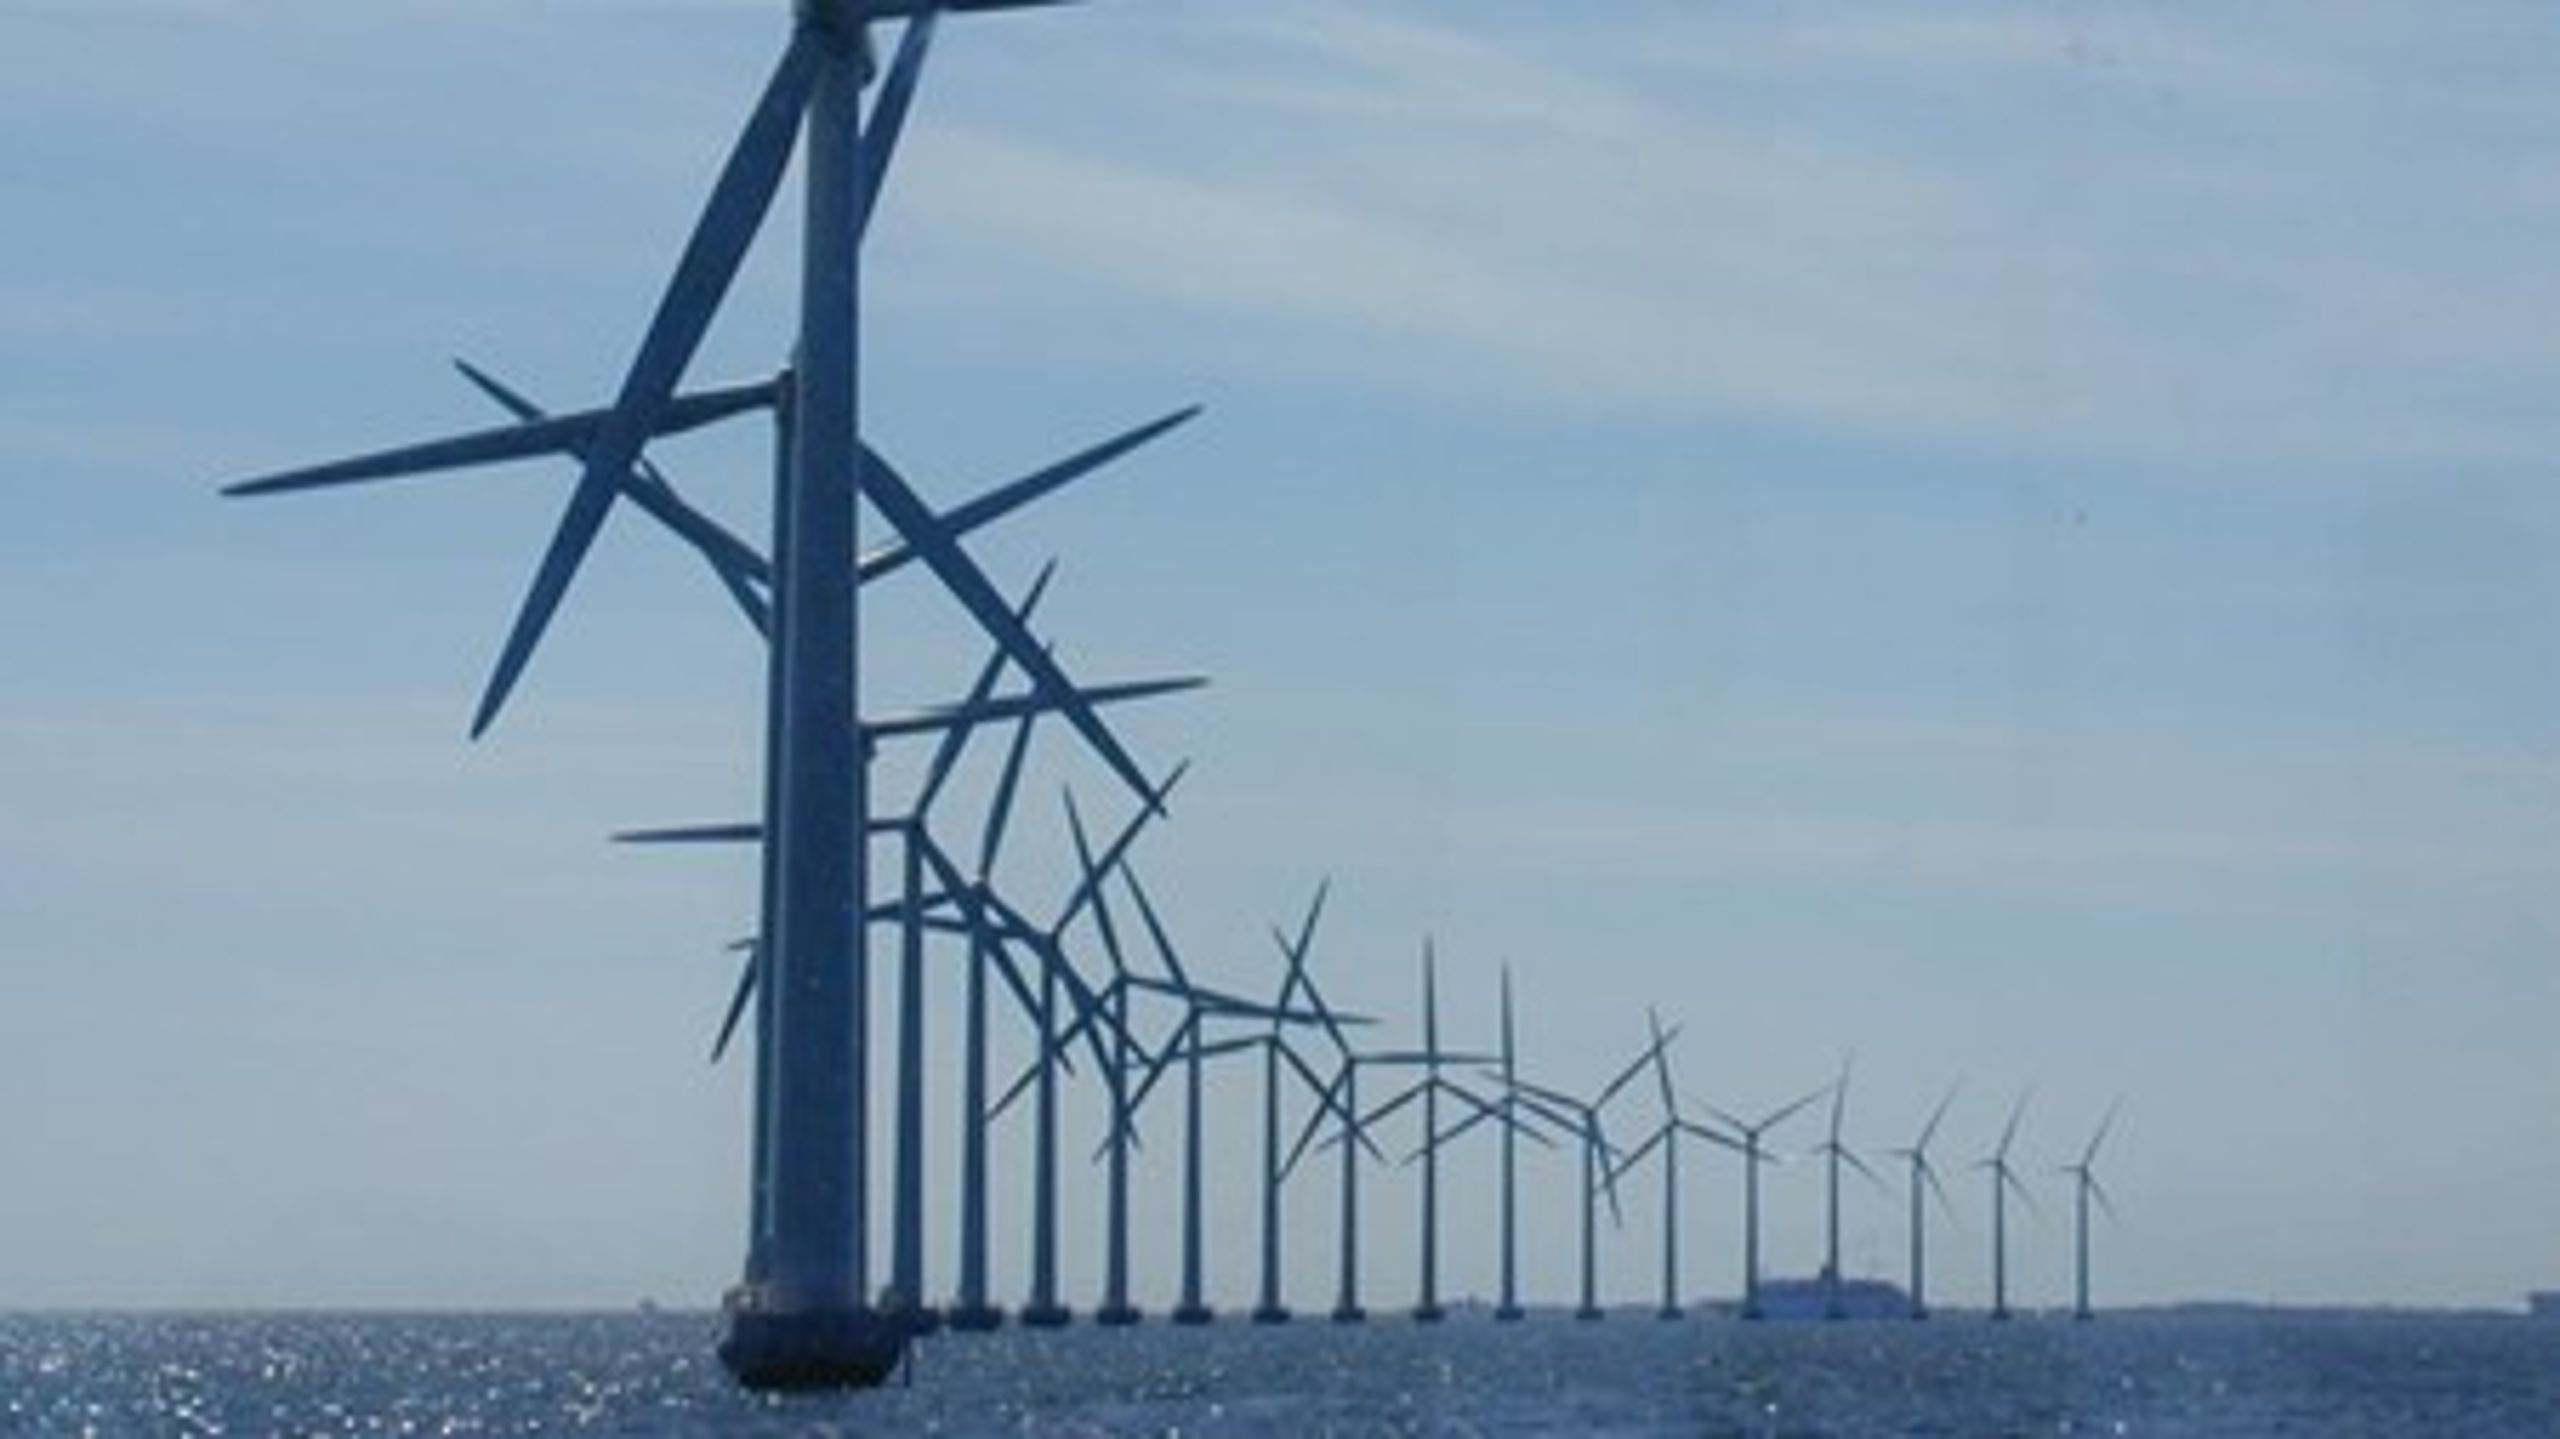 Uanset hvilken udbygning af vindenergi, der kommer til at ske på dansk område, så bliver vind toneangivende for det danske energisystem og elmarked, vurderer Energinet.dk.